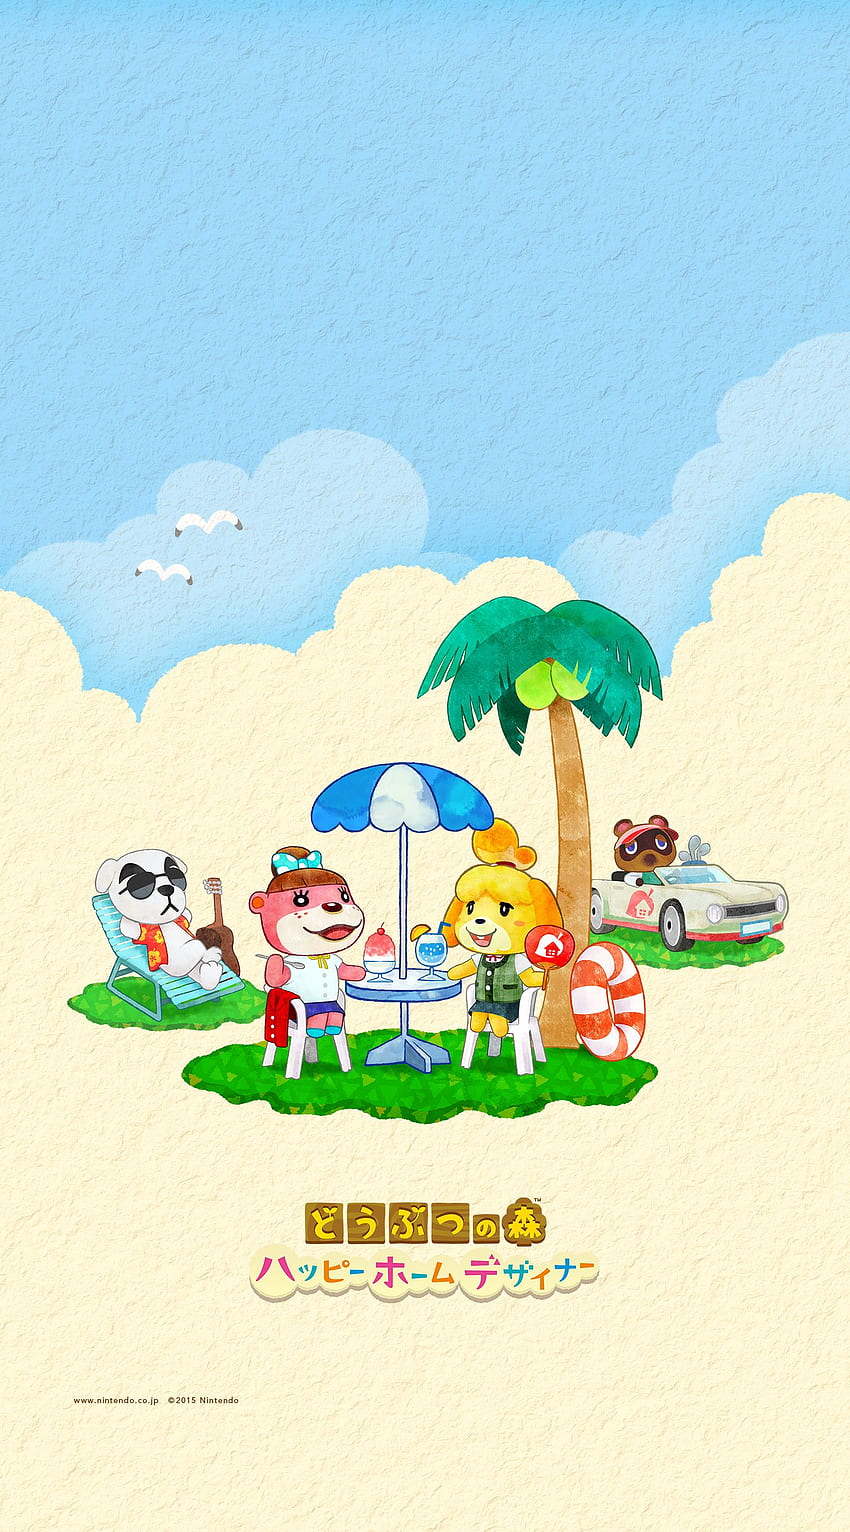 Animal Crossing musim panas yang lucu: Happy Home Designer dari Nintendo - Animal Crossing World, Cute Animal Phone wallpaper ponsel HD